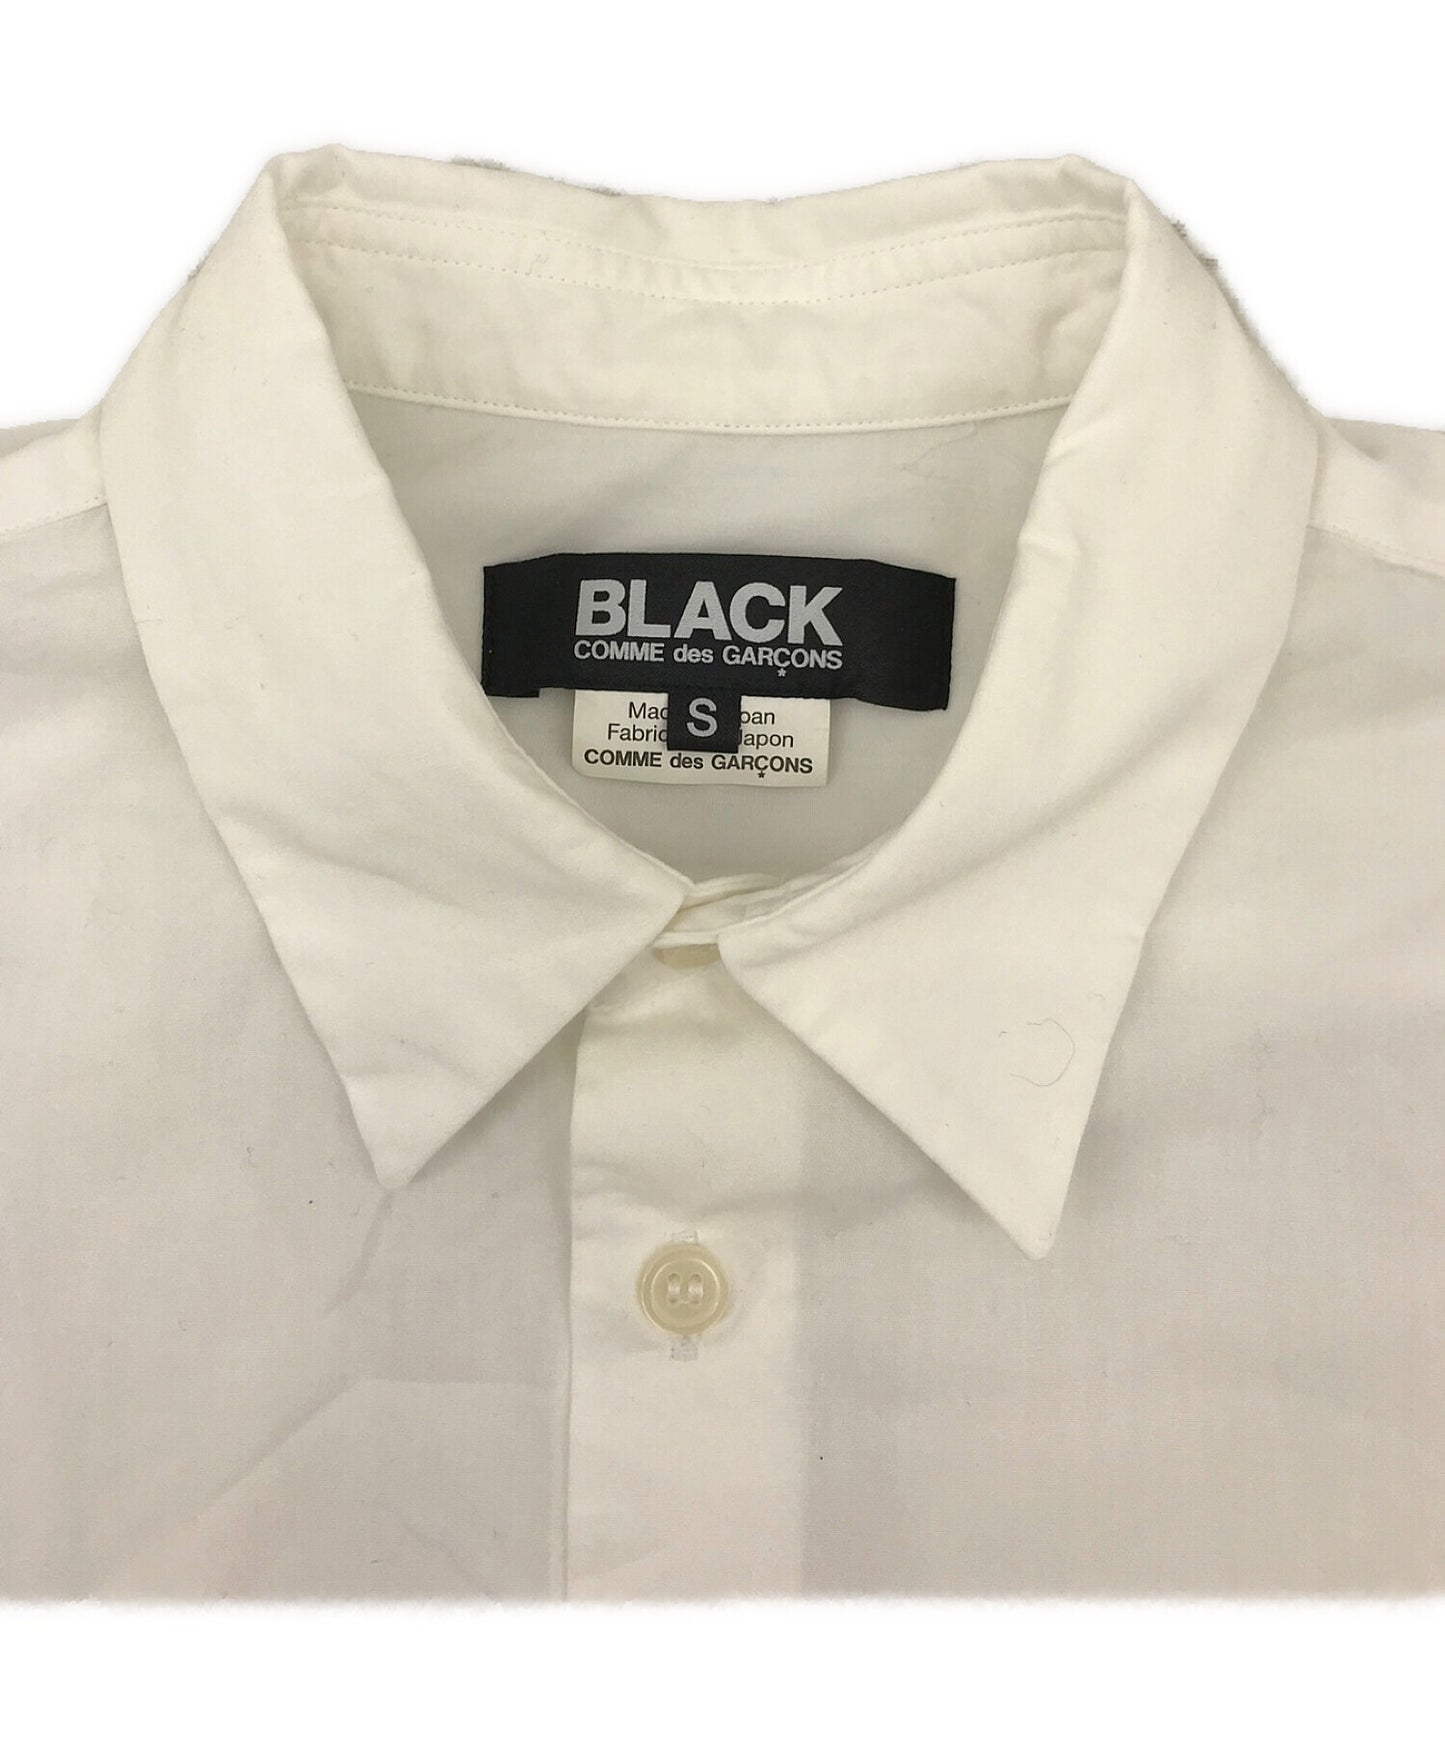 Black Comme des Garcons 디자인 긴 셔츠